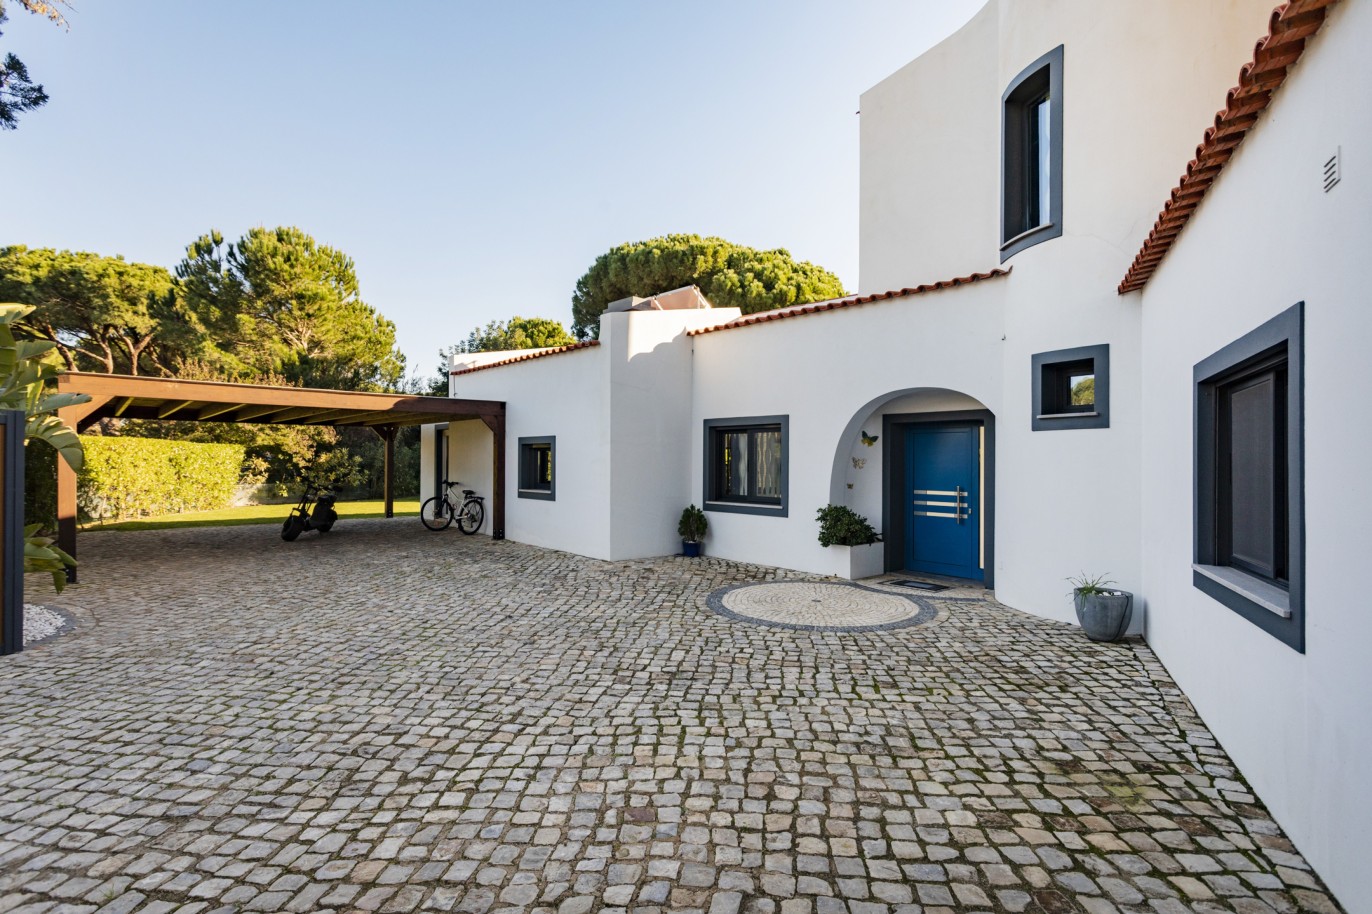 4 Bedroom Villa with swimming pool for sale, in Vilamoura, Algarve_214560